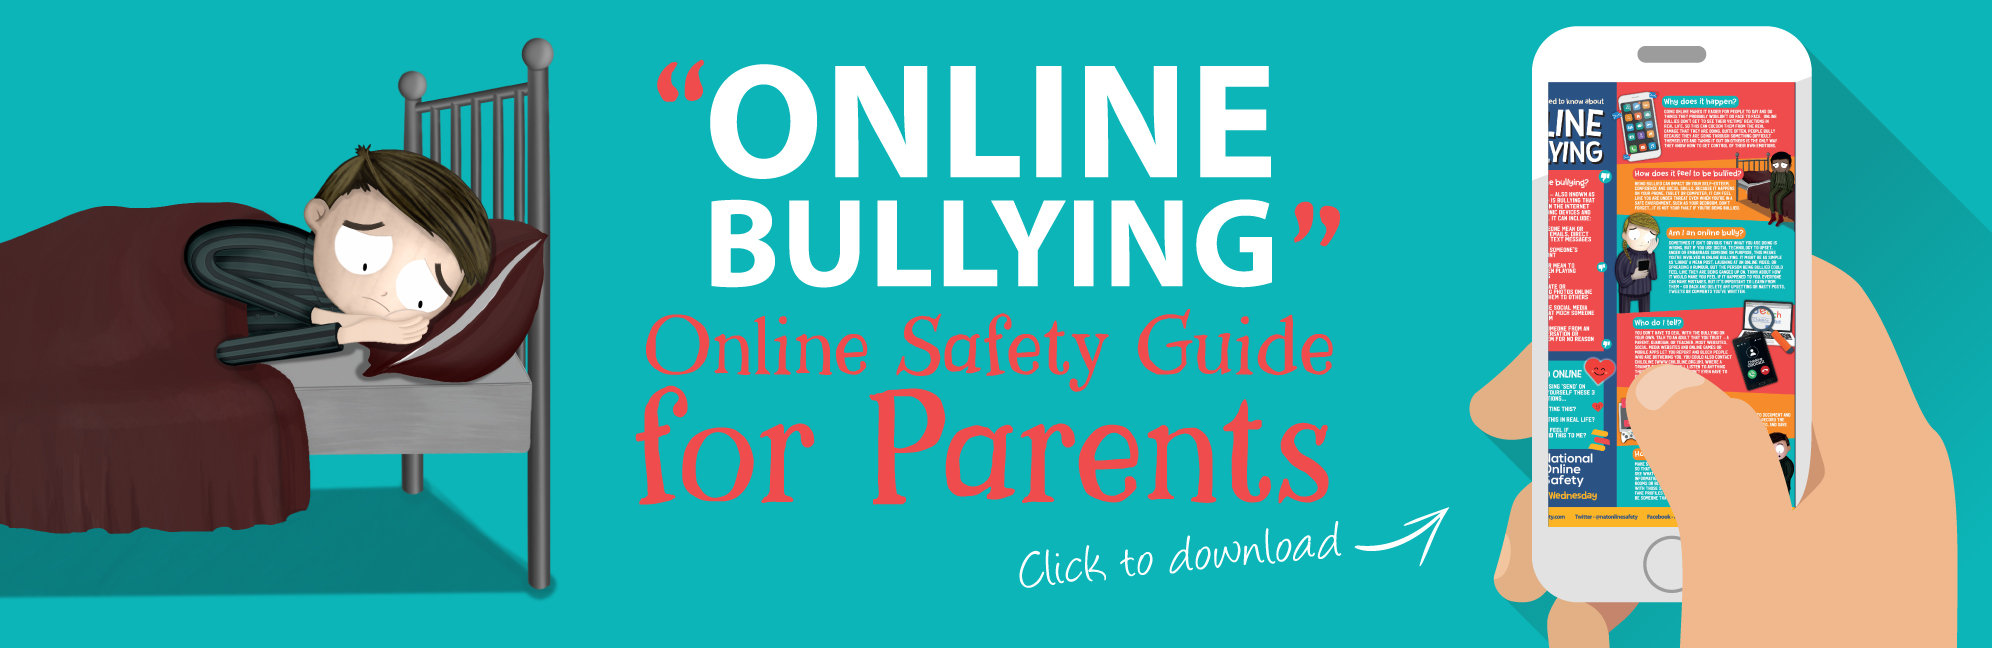 Online-Bullying-Web-Banner